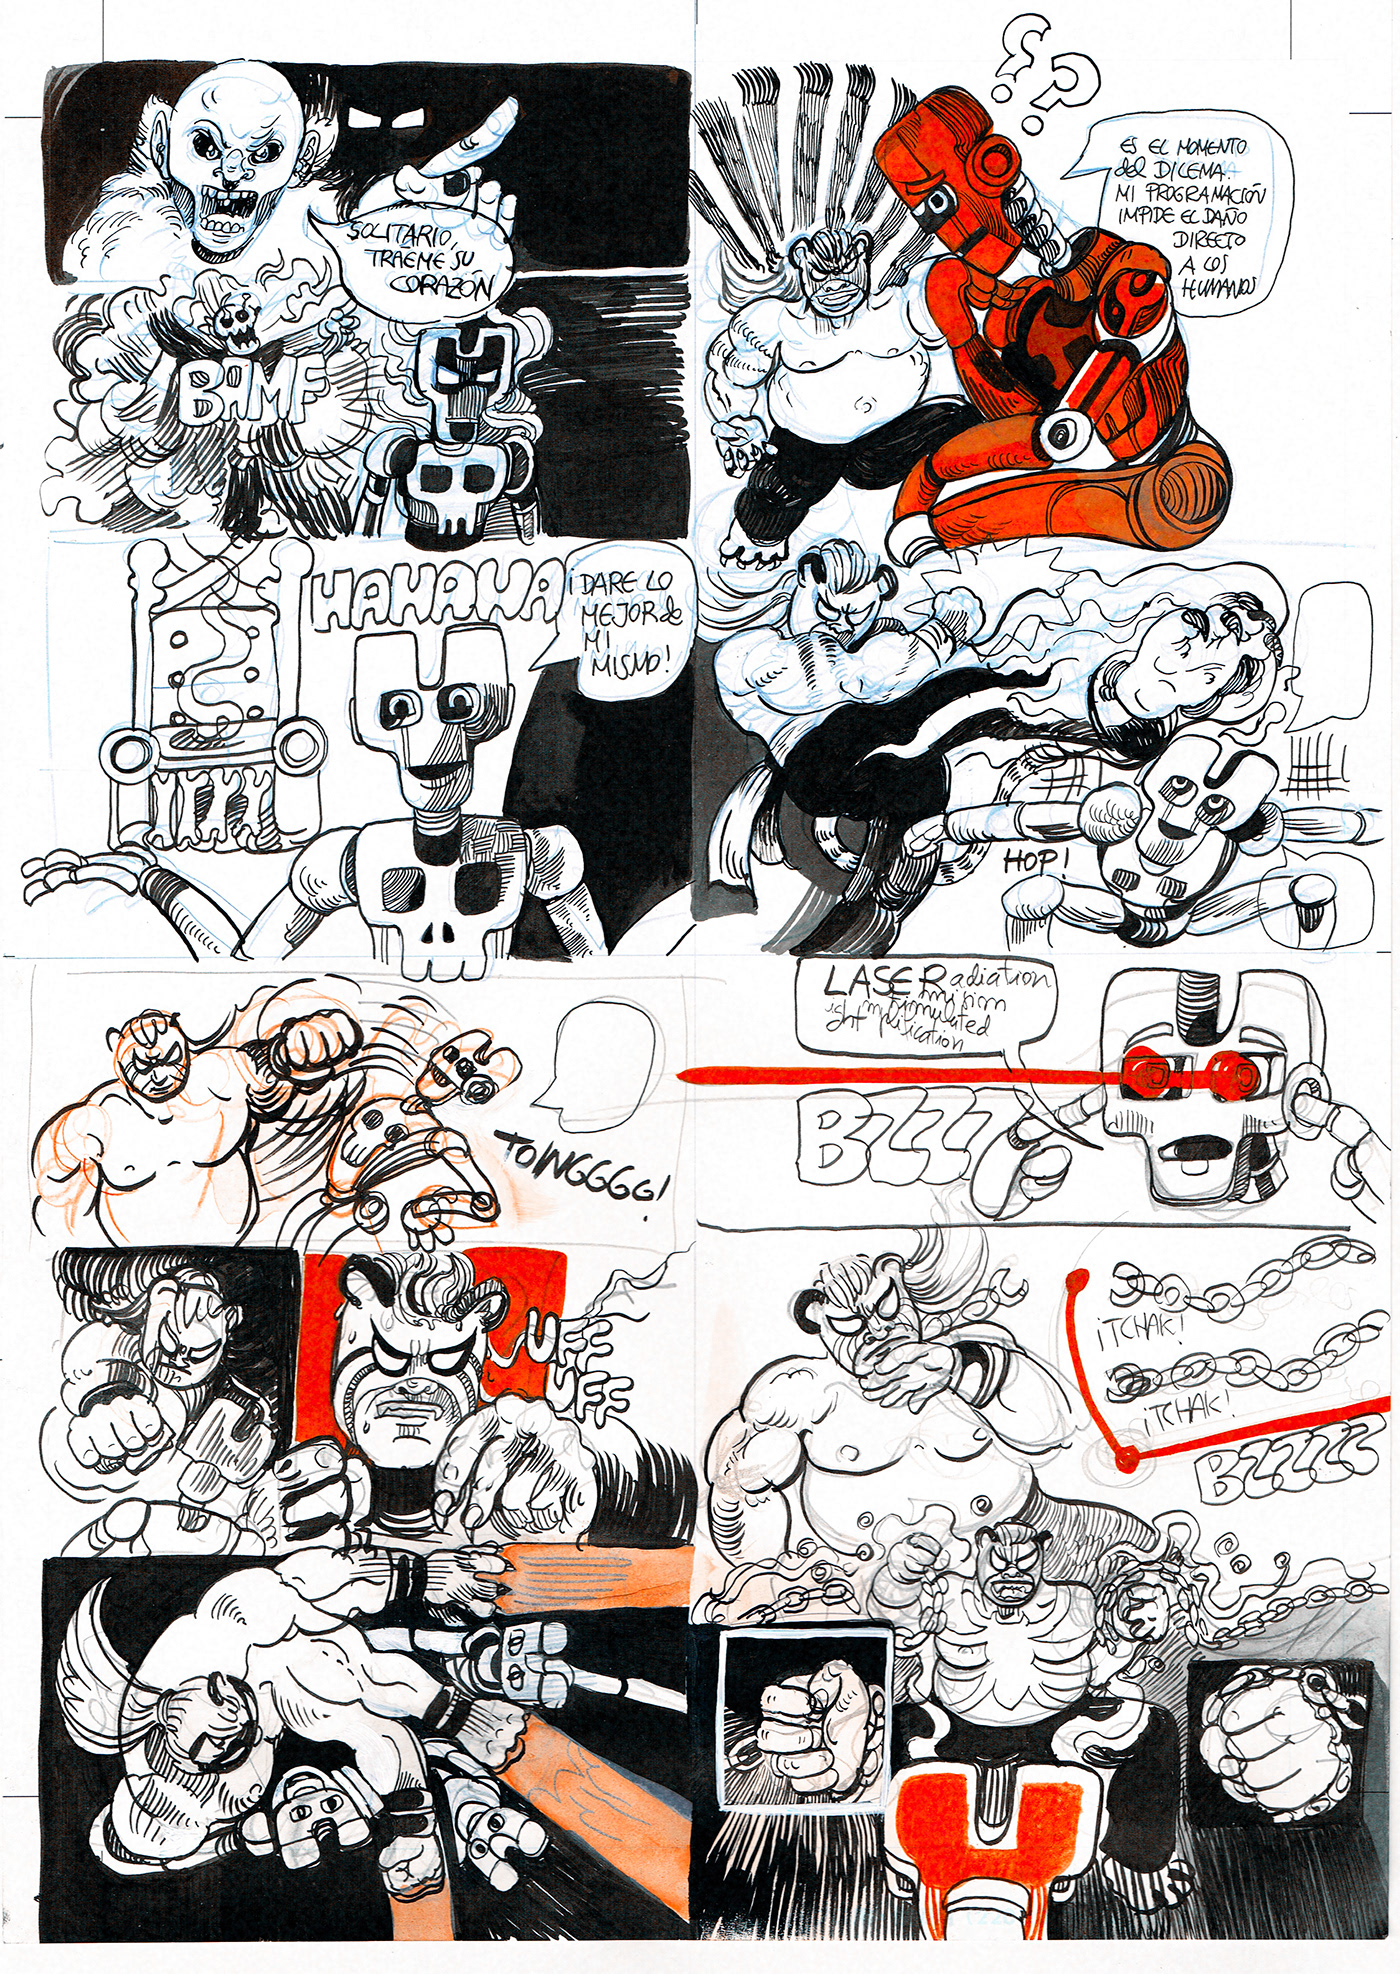 Paco Anguita comics